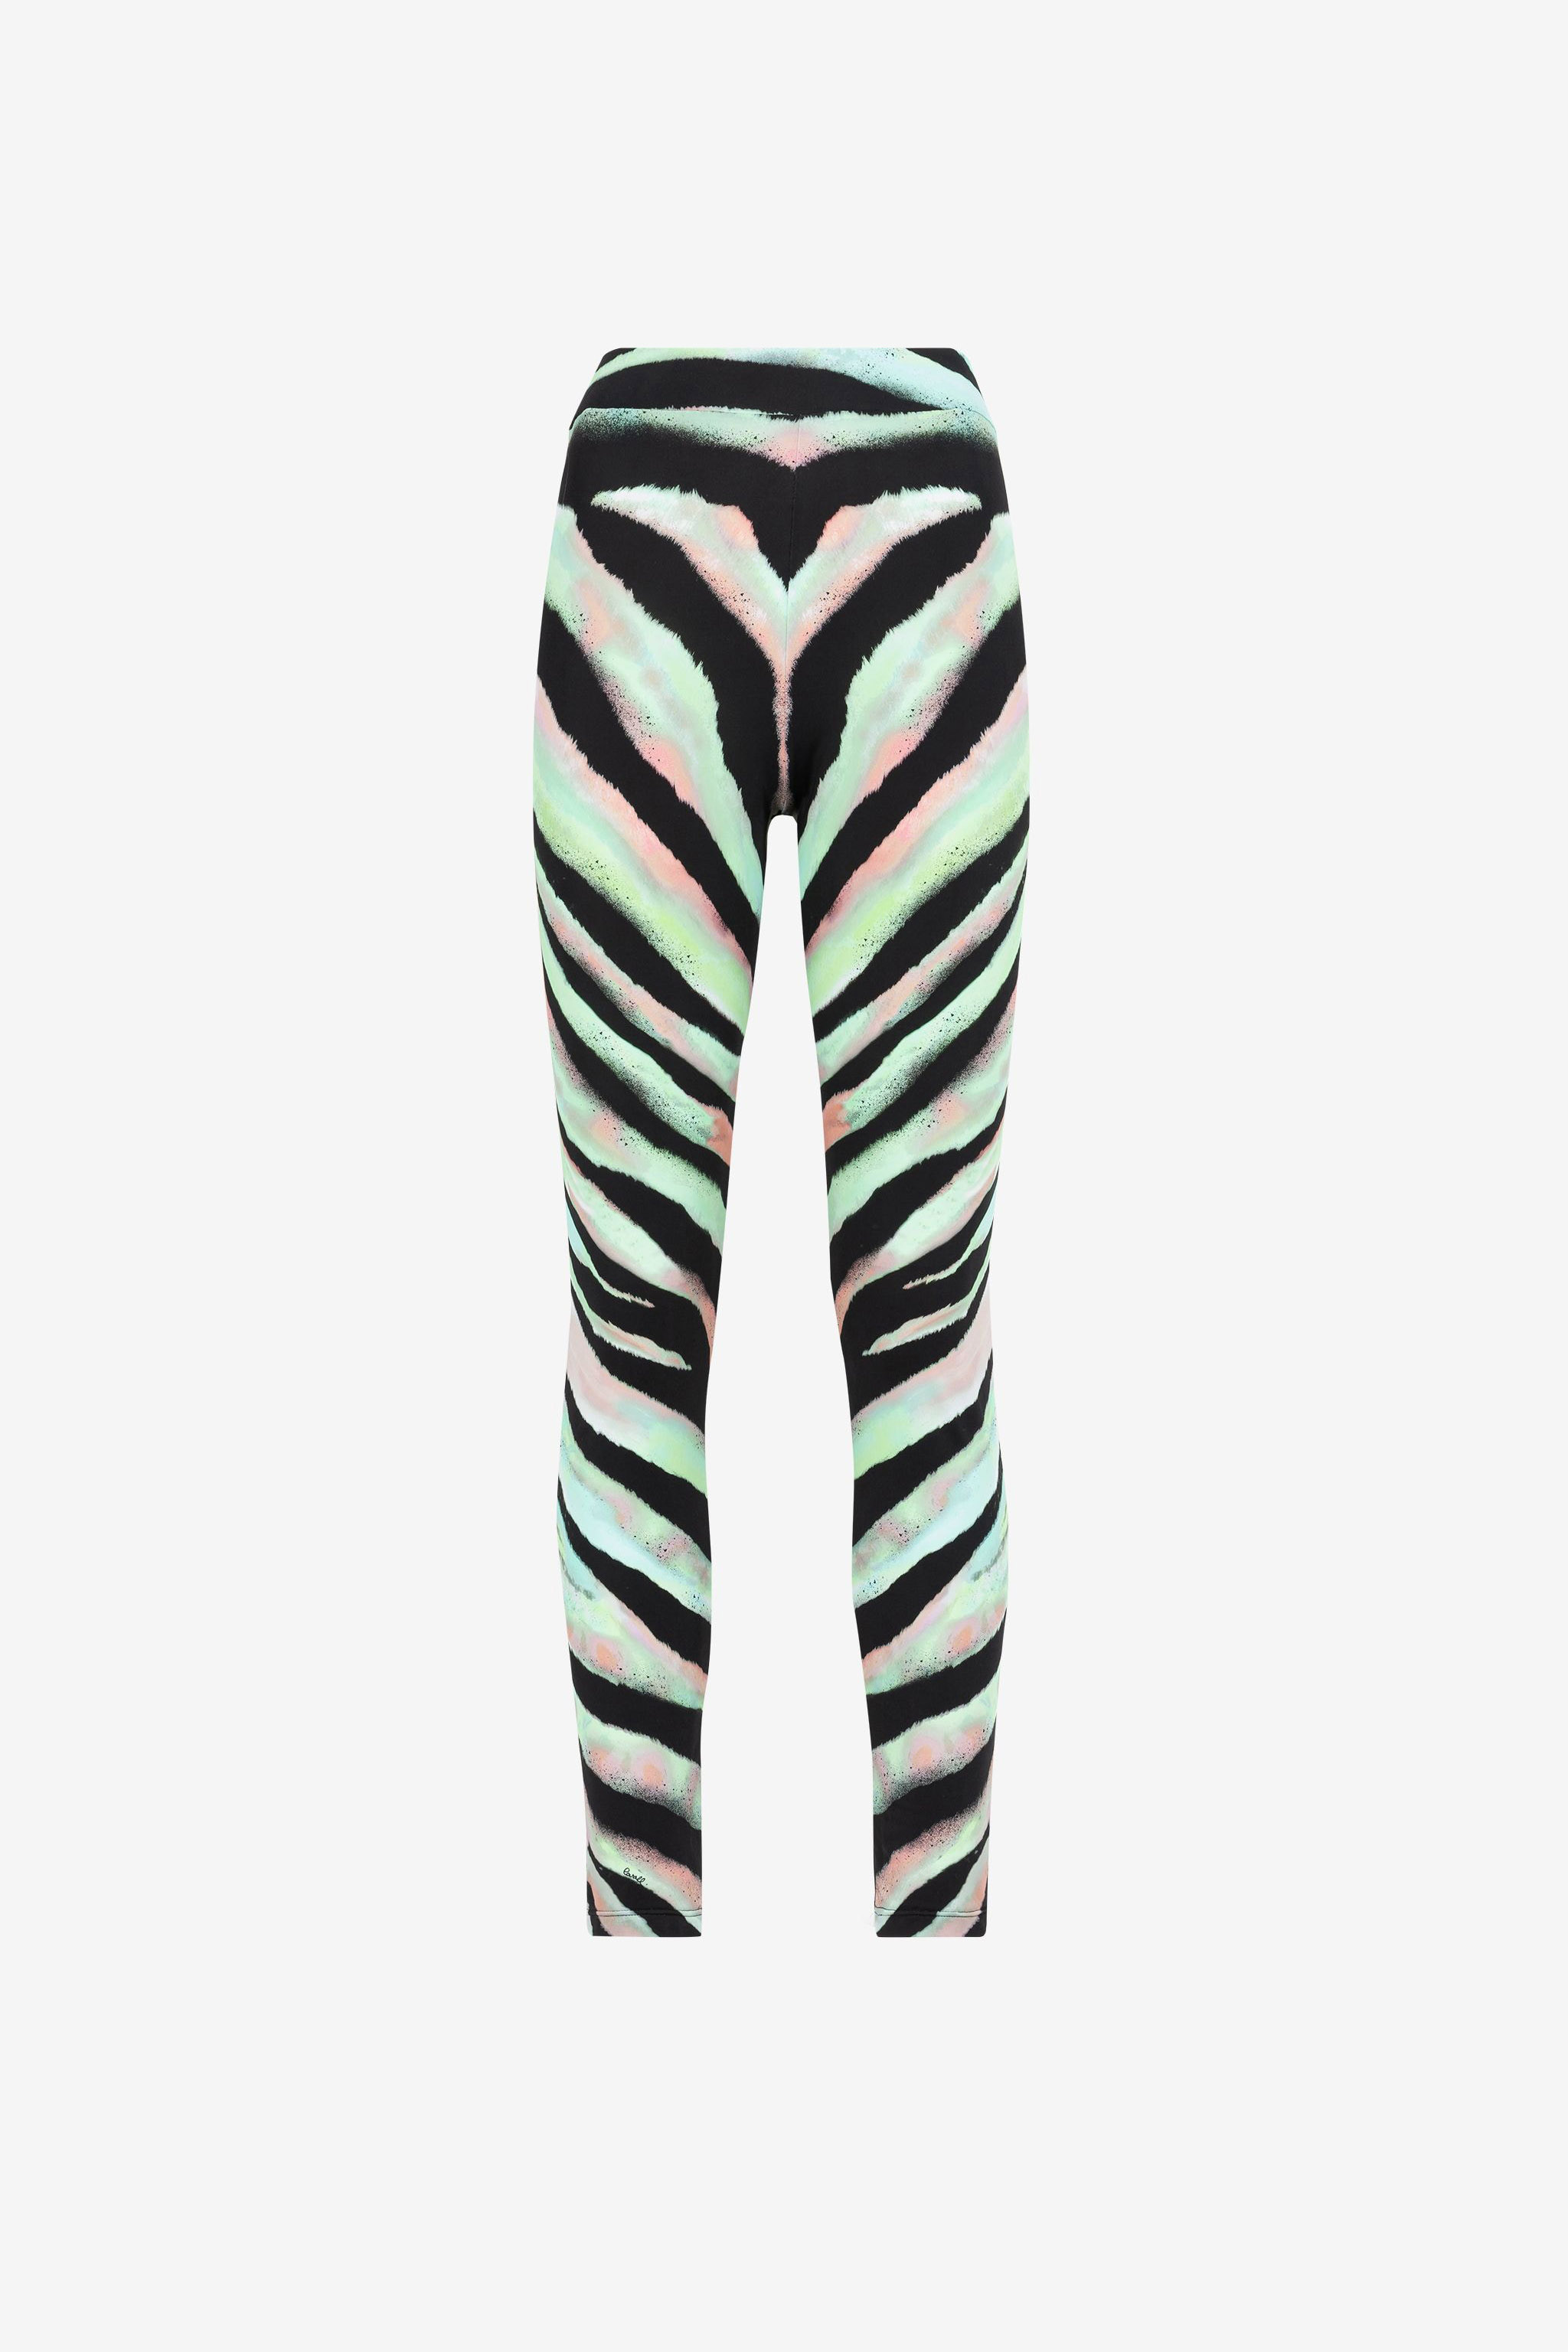 Love Yourself Zebra Print Leggings (Coral Pastel) - ShopFlyBrands